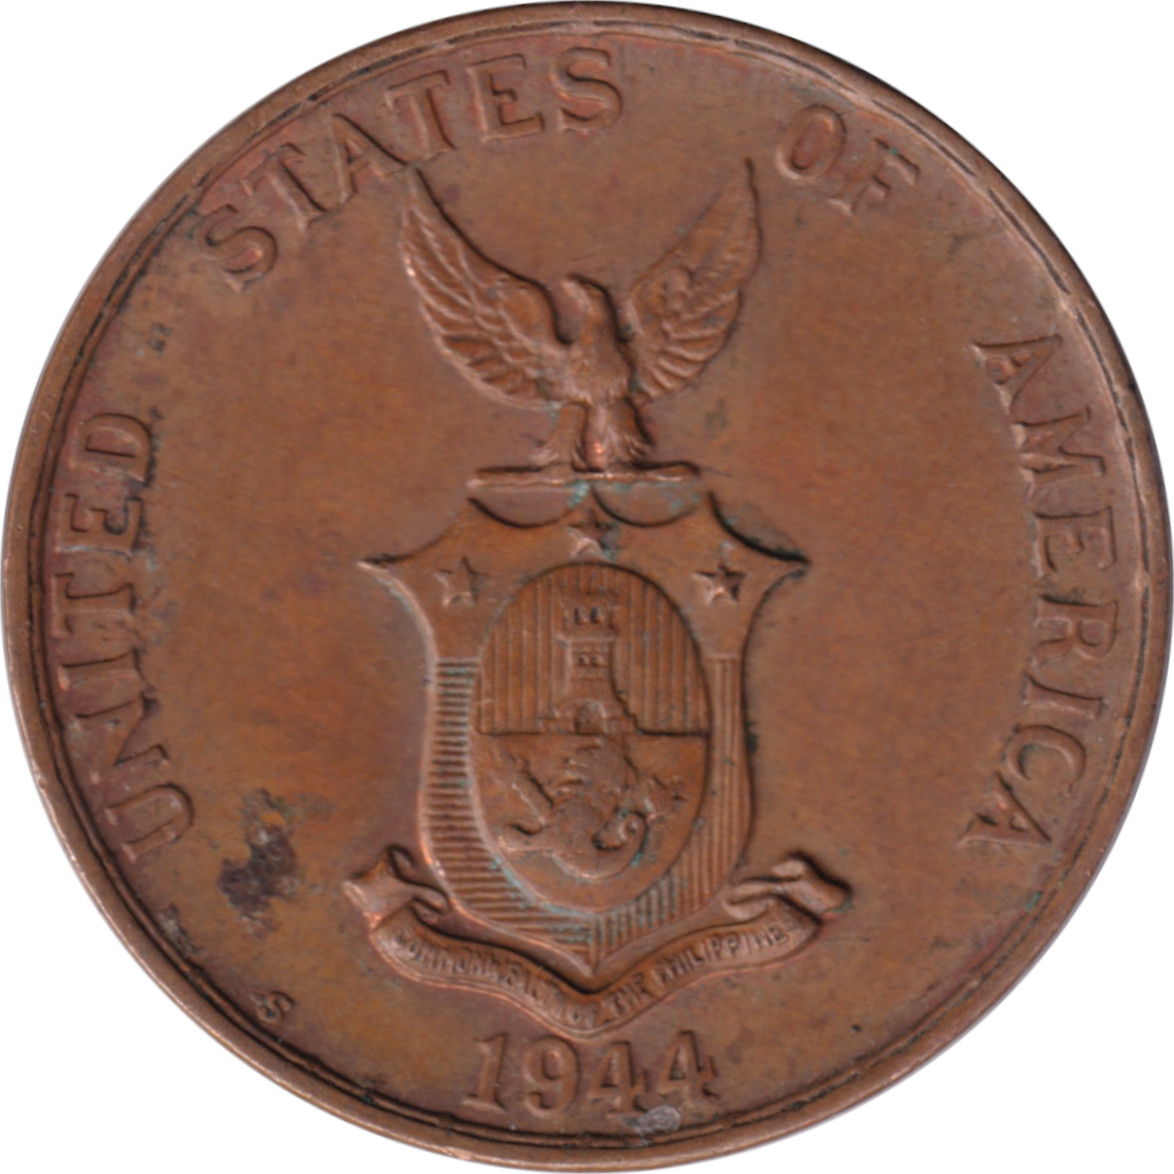 1 centavo - Emblème du Commonwealth